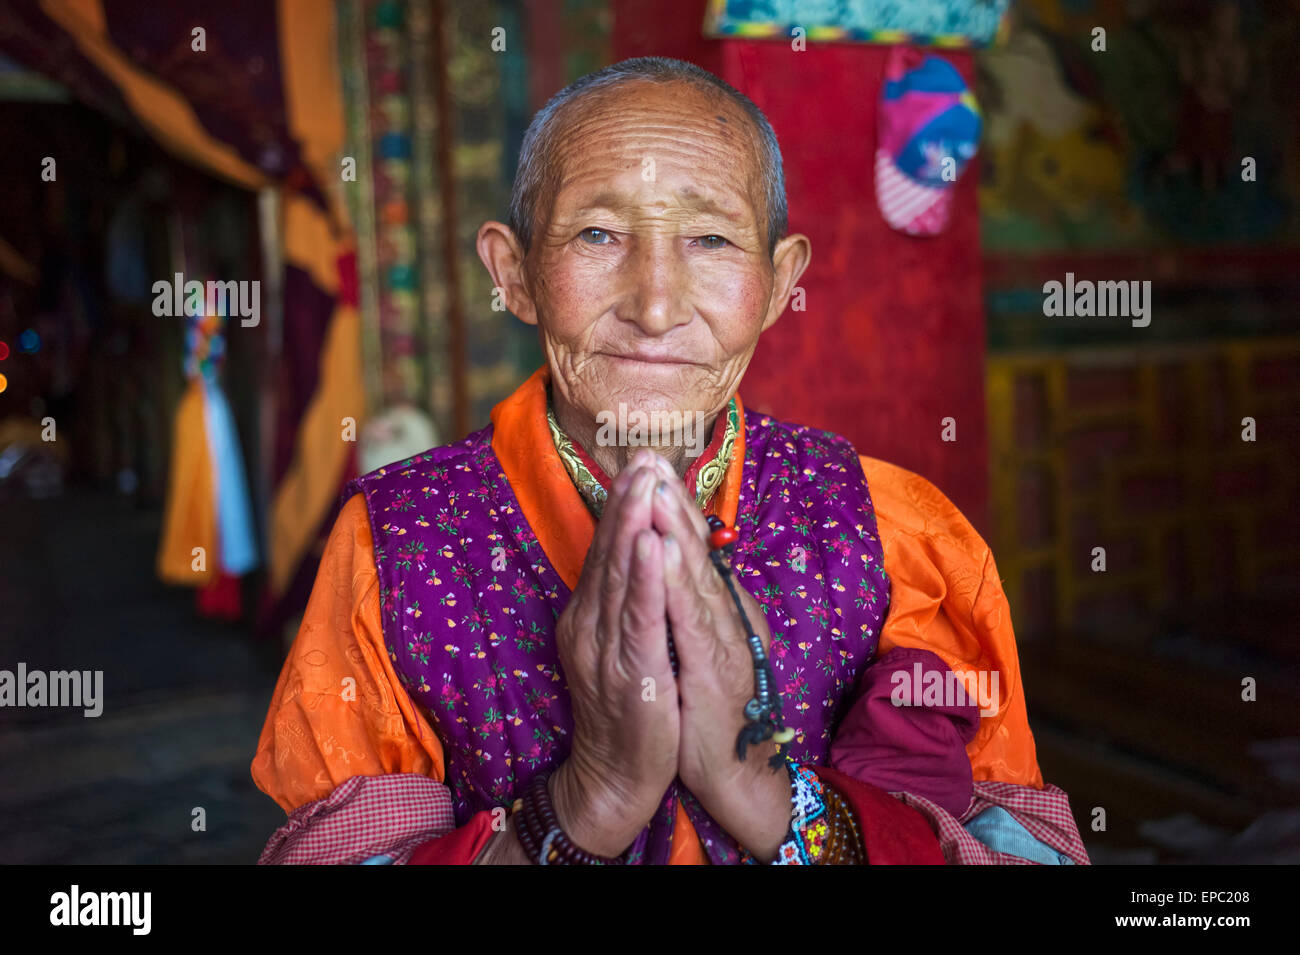 Tibetan woman; Ganze, Sichuan, China Stock Photo